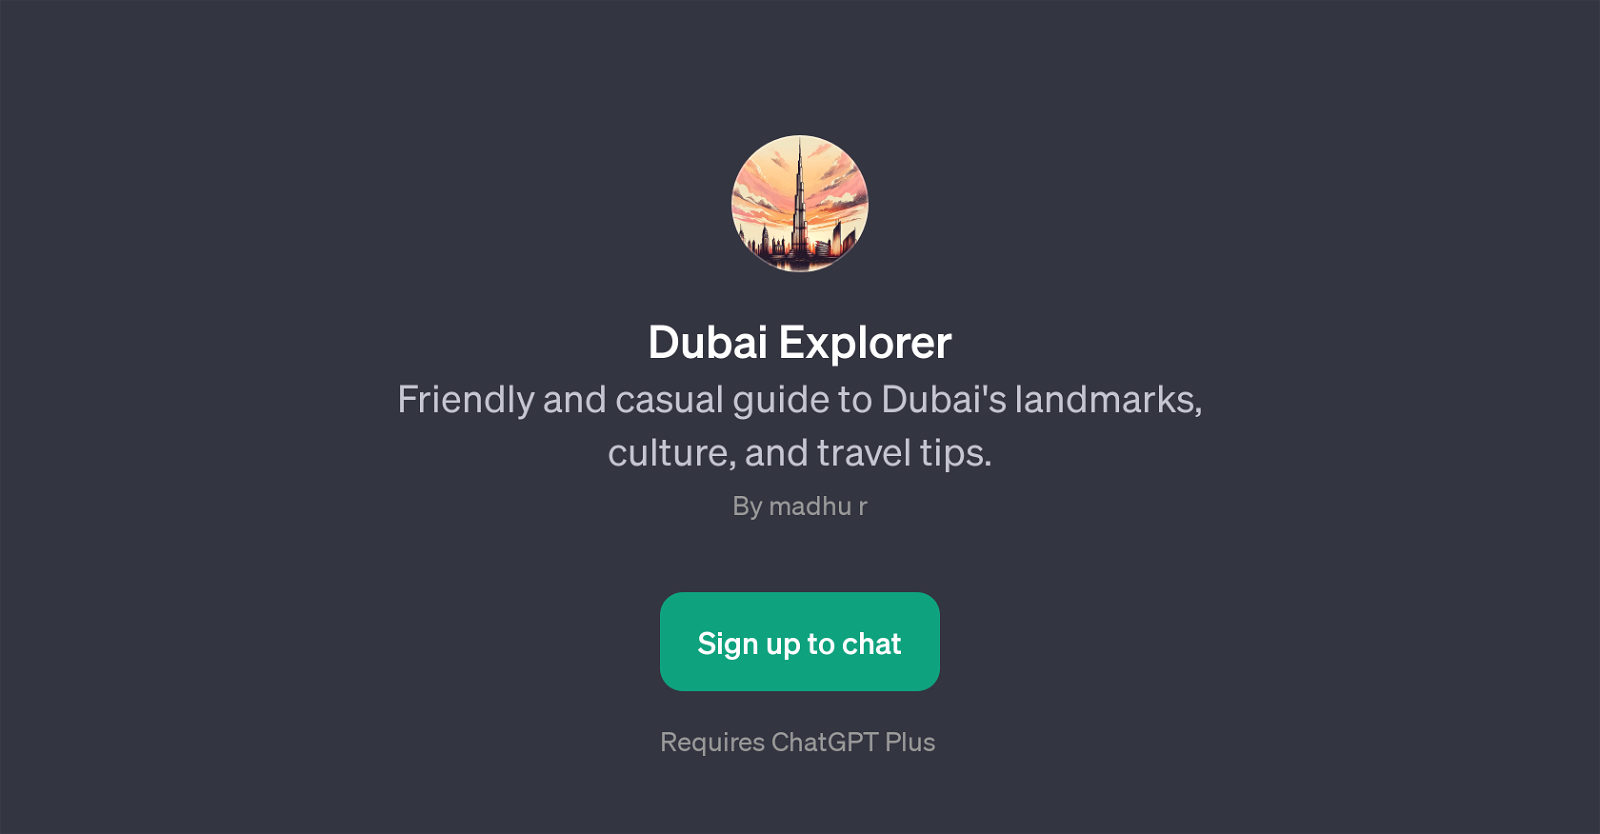 Dubai Explorer website